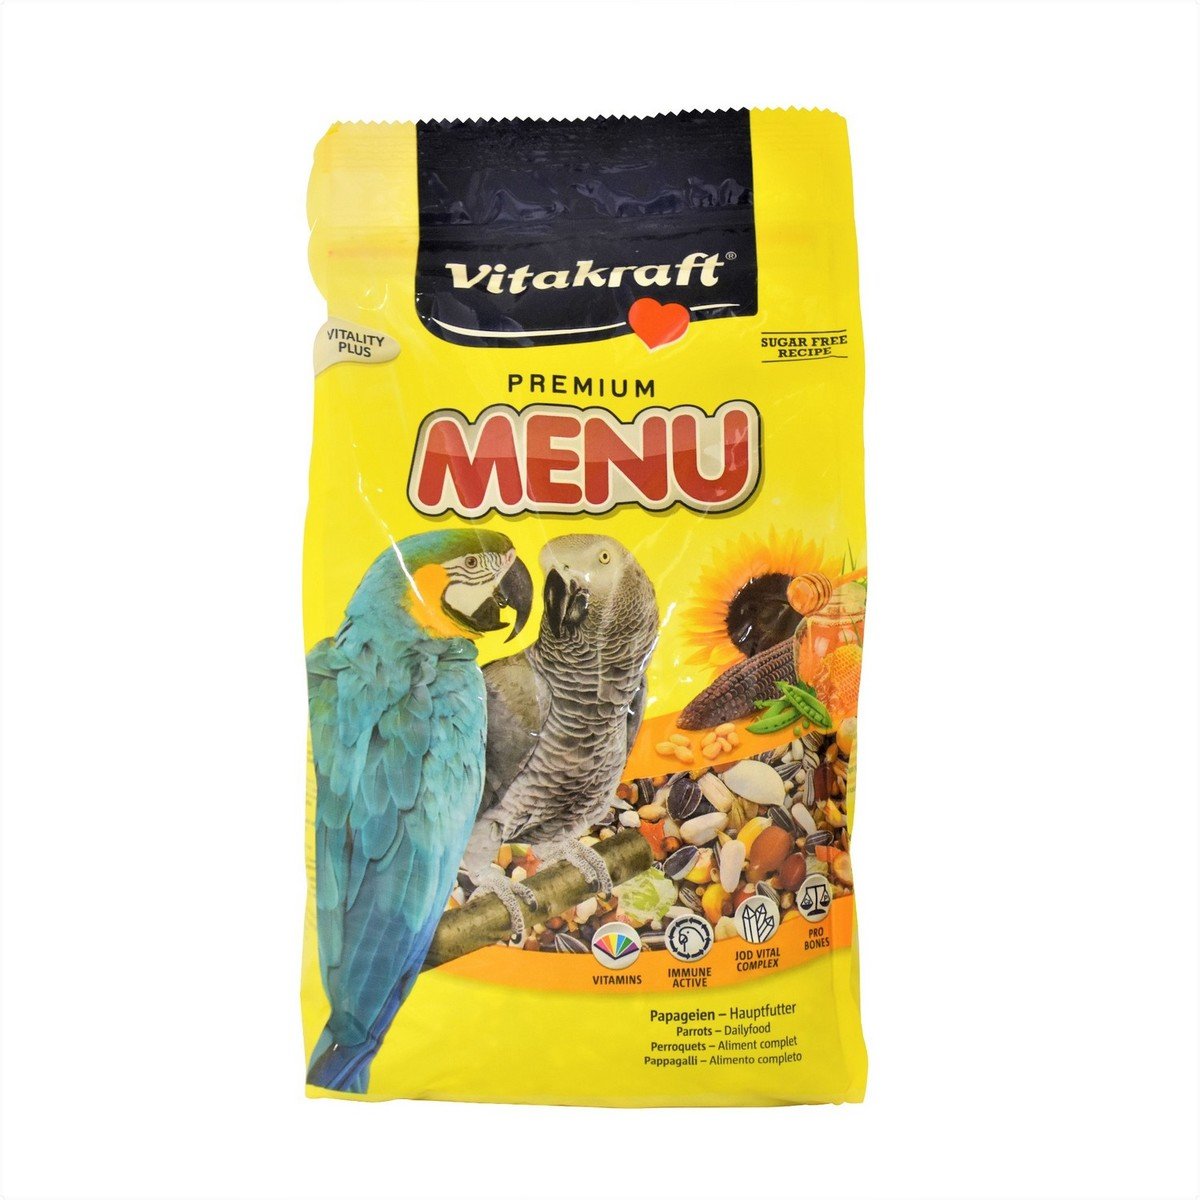 فيتا كرافت بريميوم مينيو طعام الطيور اليومي مفعم بالحيوية ١ كجم